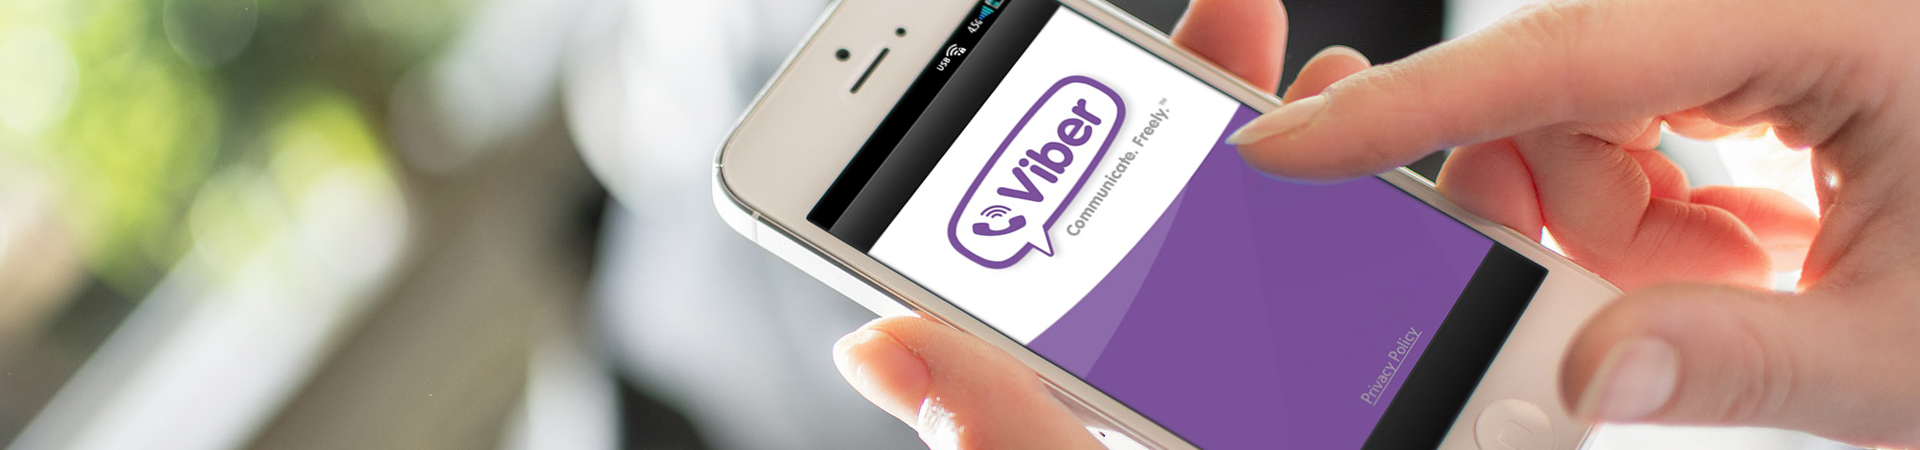 تصميم وتطوير تطبيق Viber للمراسلة الذي يستخدمه 1.17 مليار مستخدم